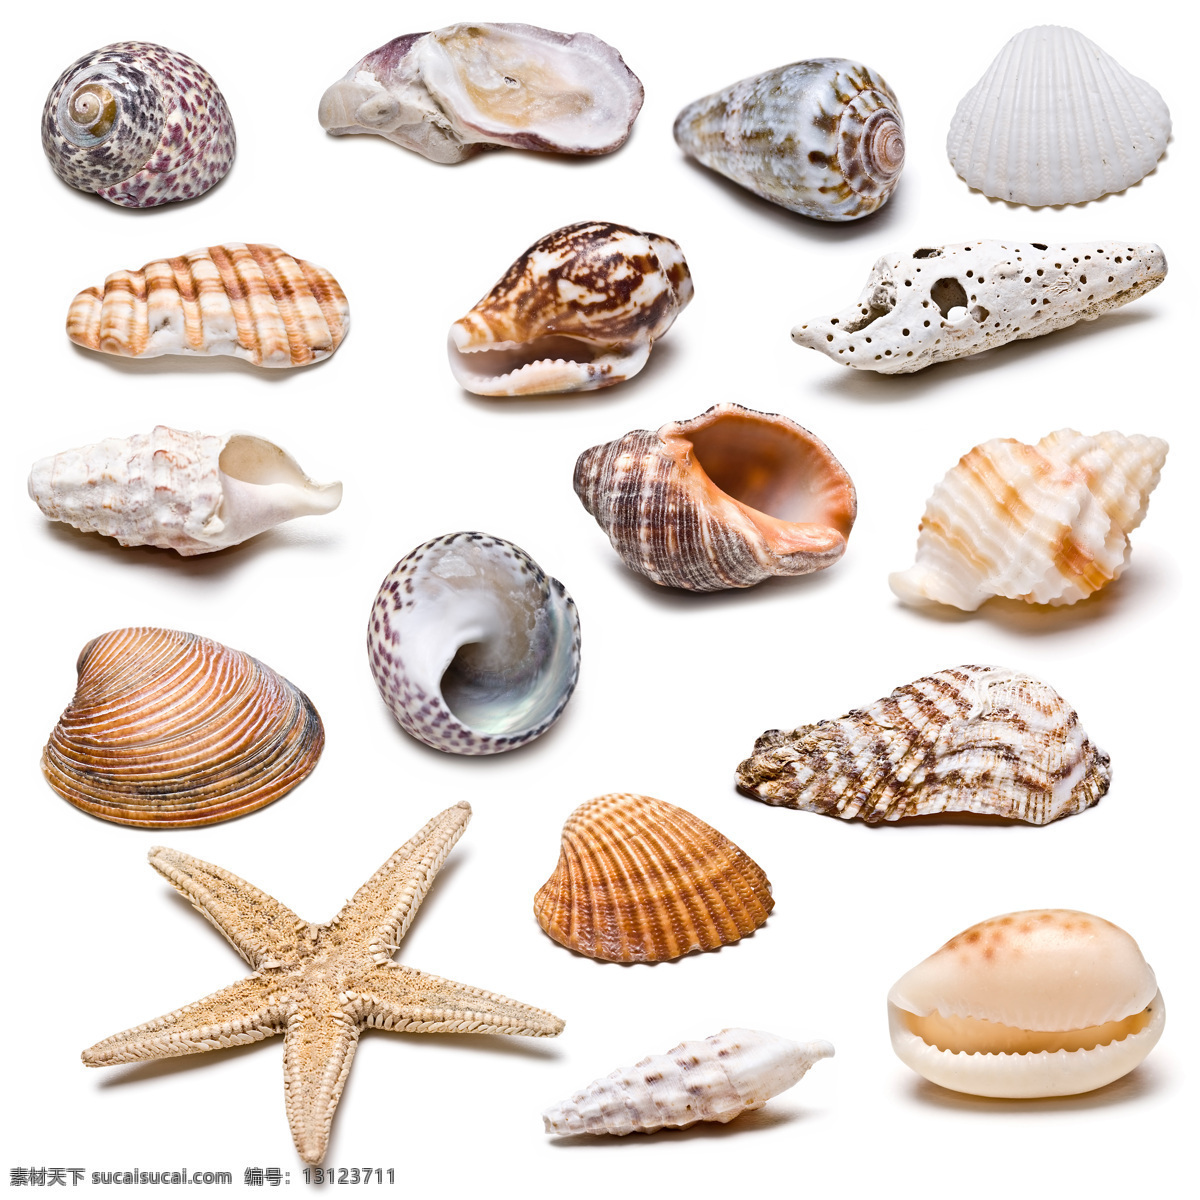 海产品素材 海星 海阁 创意贝壳 贝壳 贝壳素材 贝壳摄影 个性贝壳 装饰品 水中生物 生物世界 白色